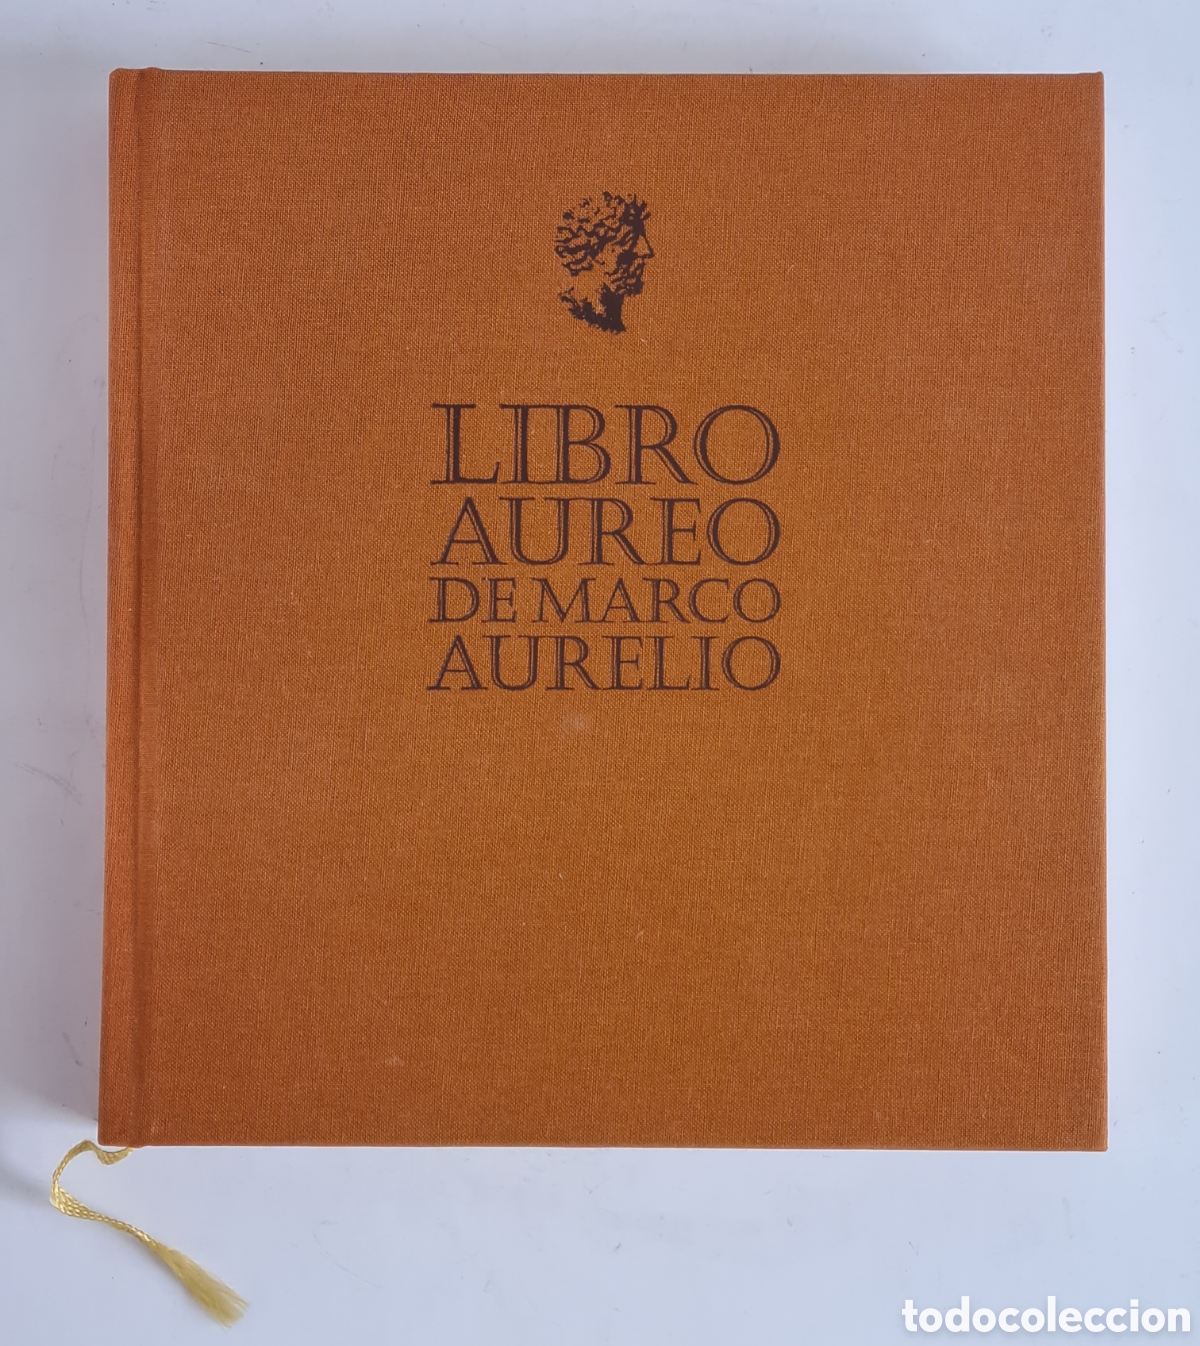 Libro Áureo de Marco Aurelio - Edición limitada y numerada